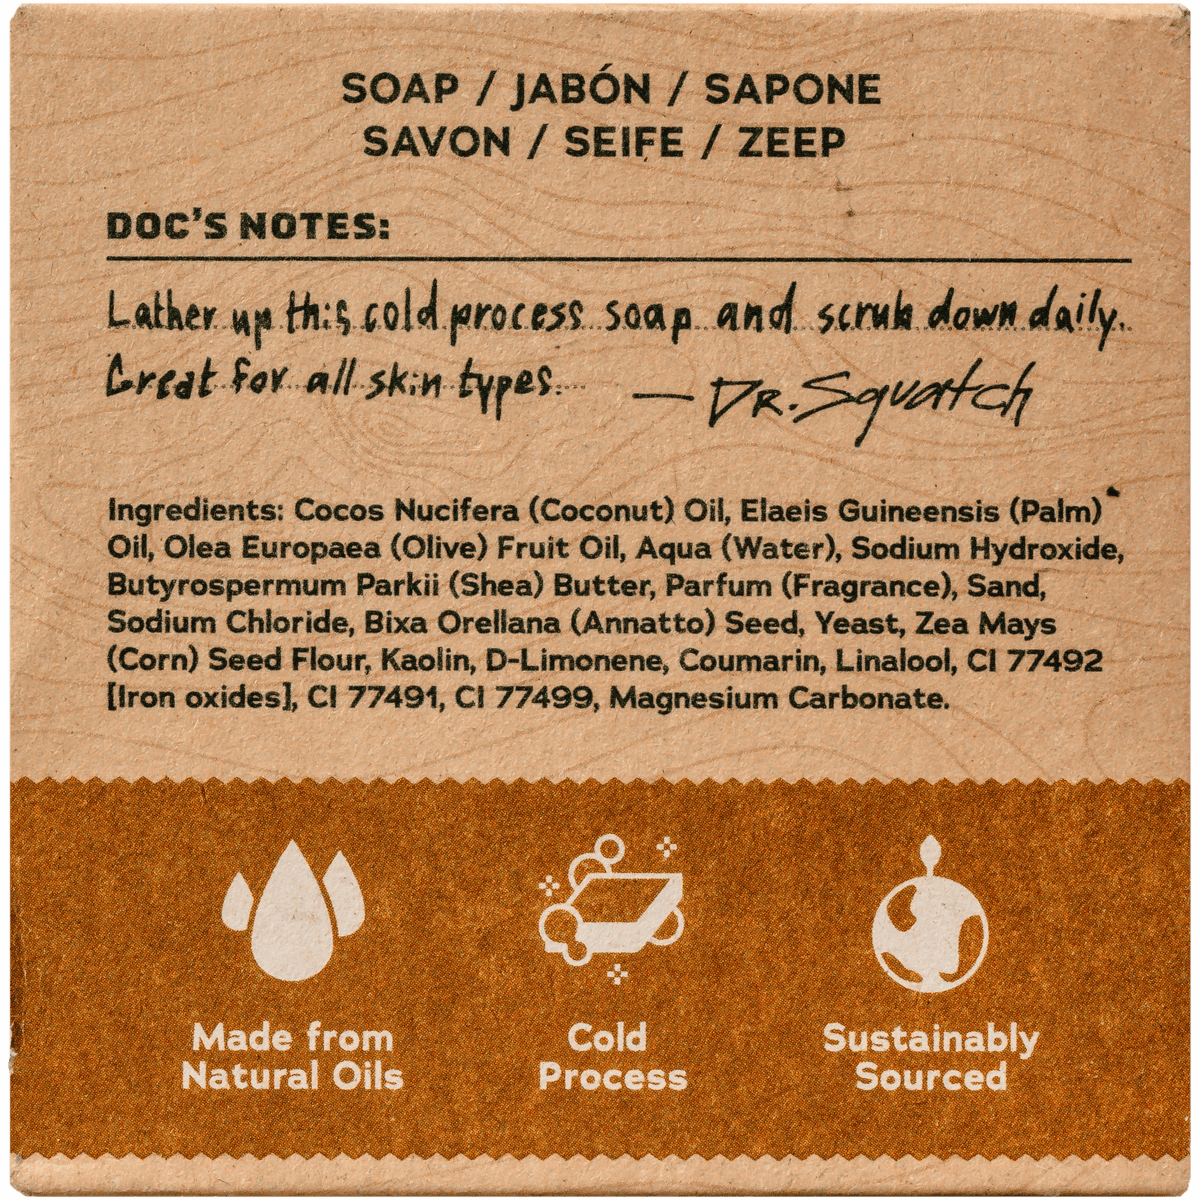 DR. SQUATCH NEW Wood Barrel Bourbon Soap Review 